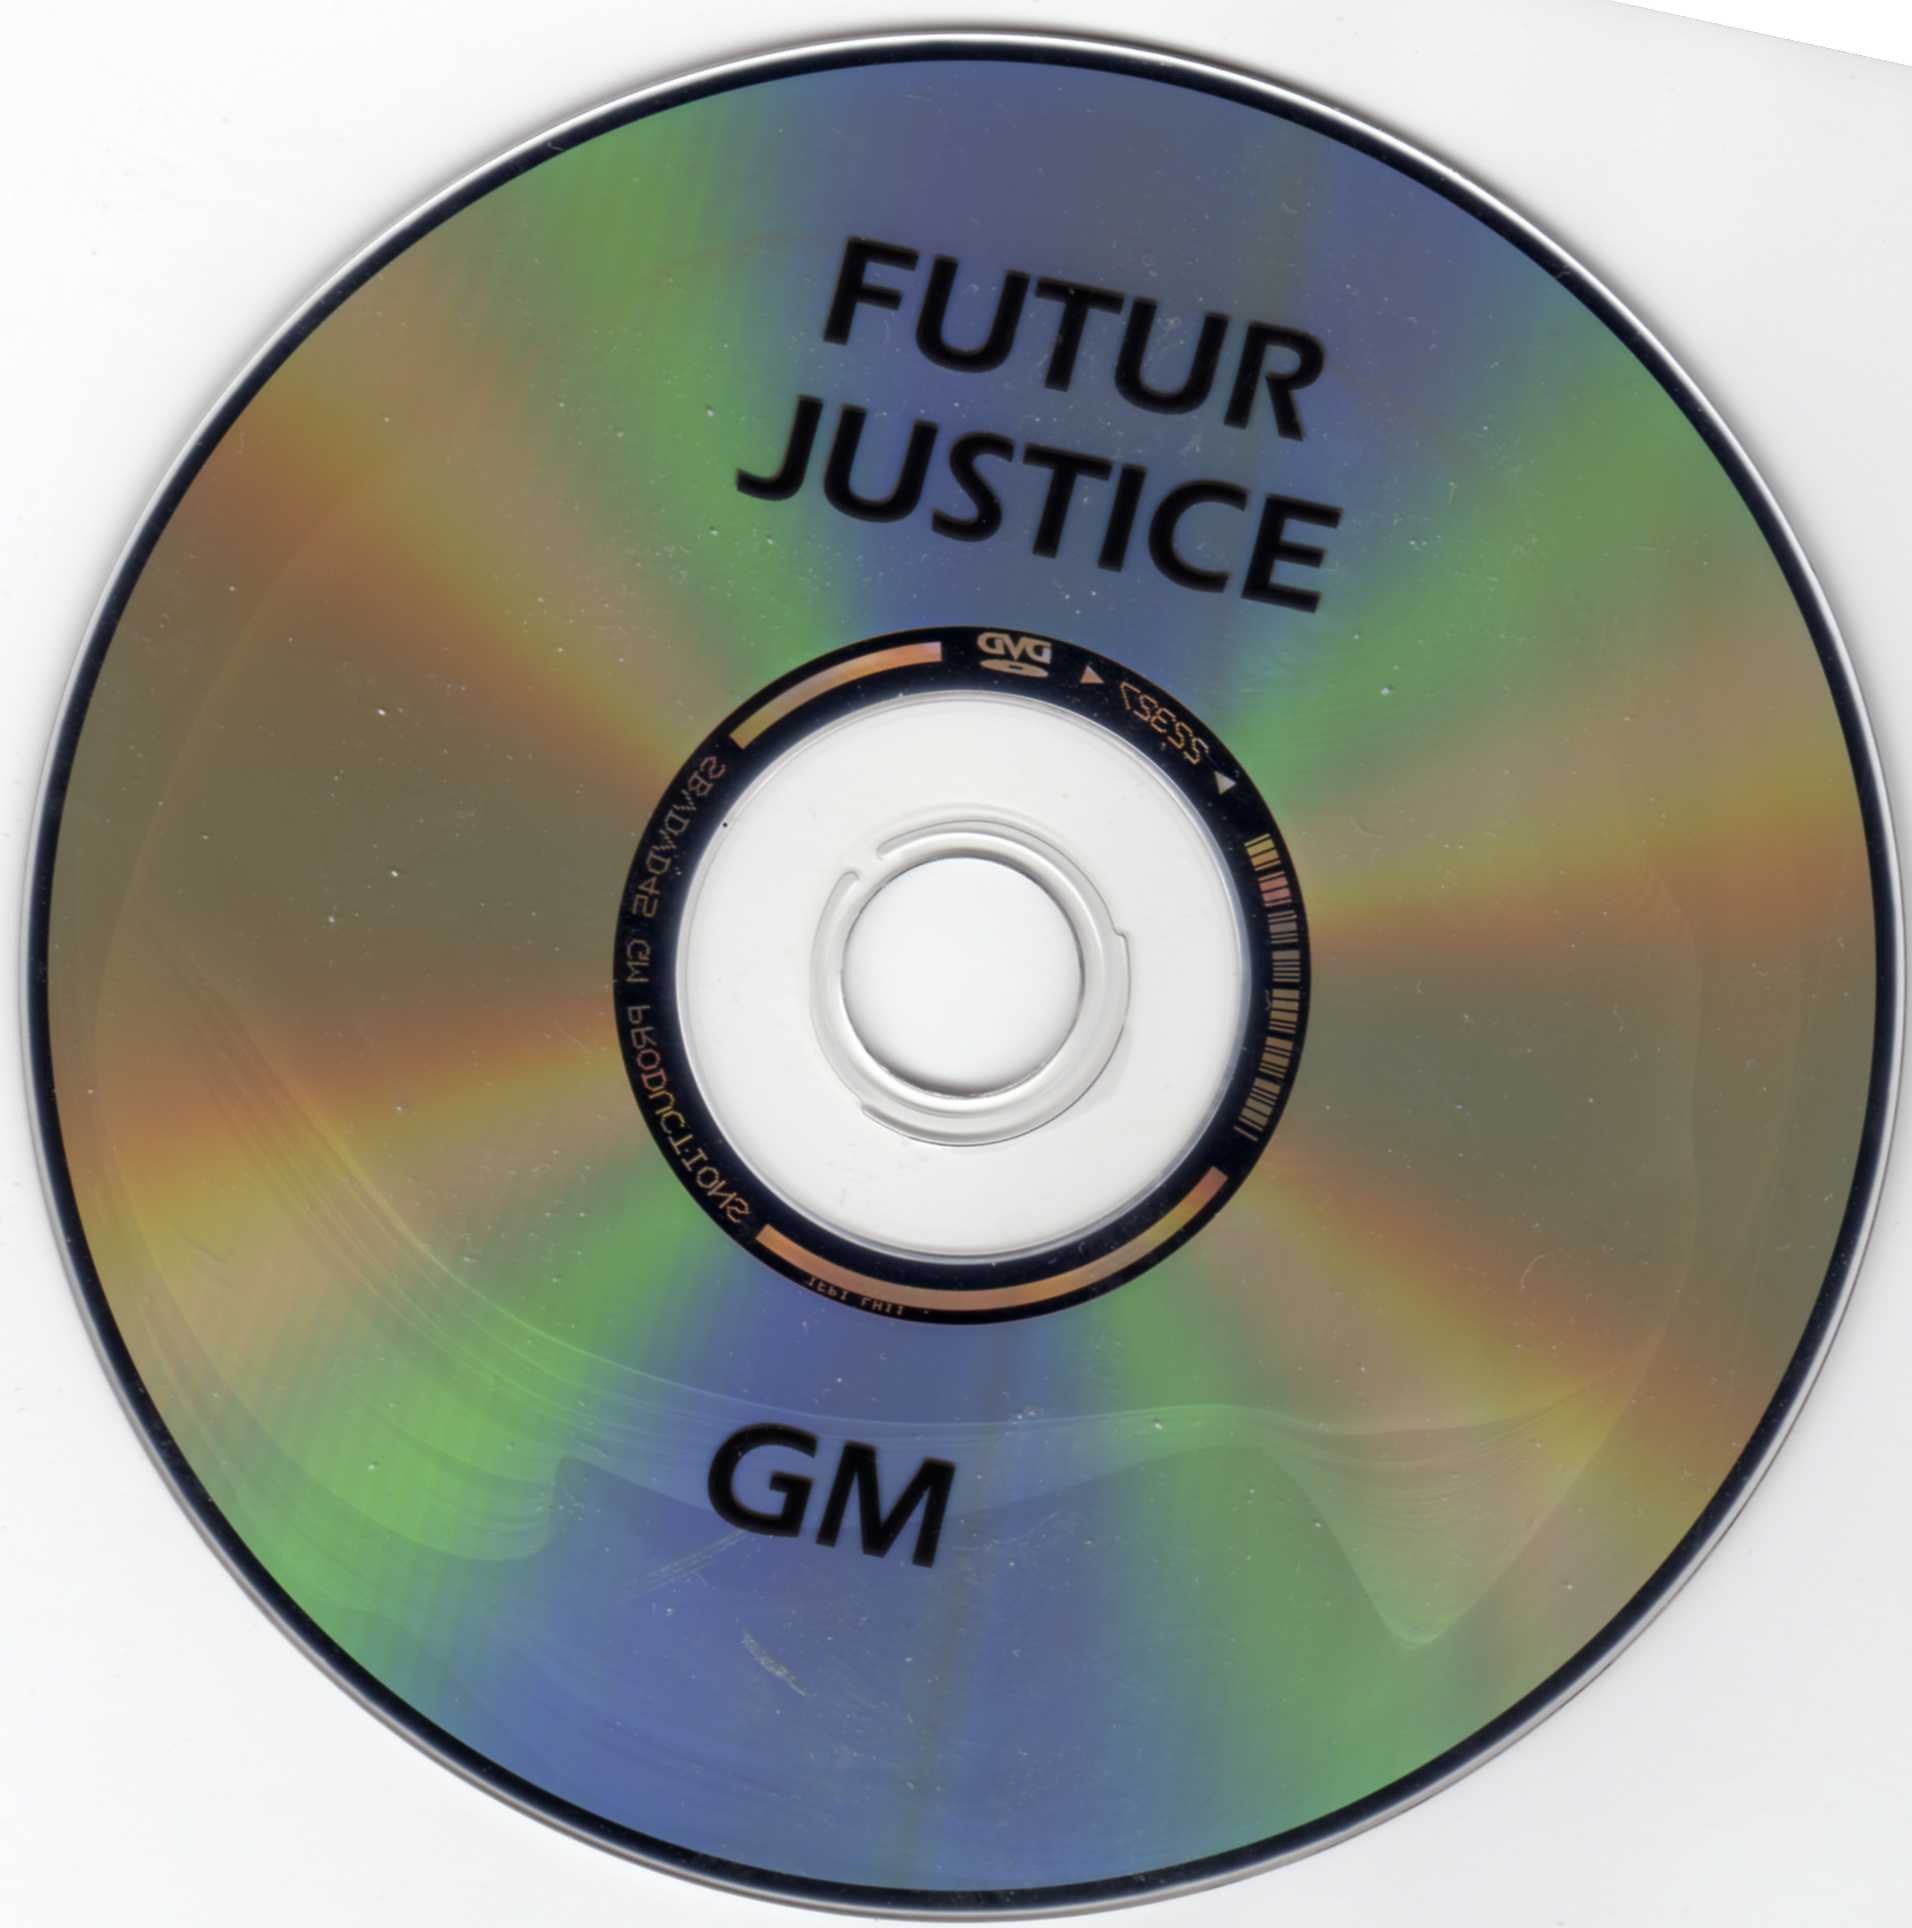 Futur justice